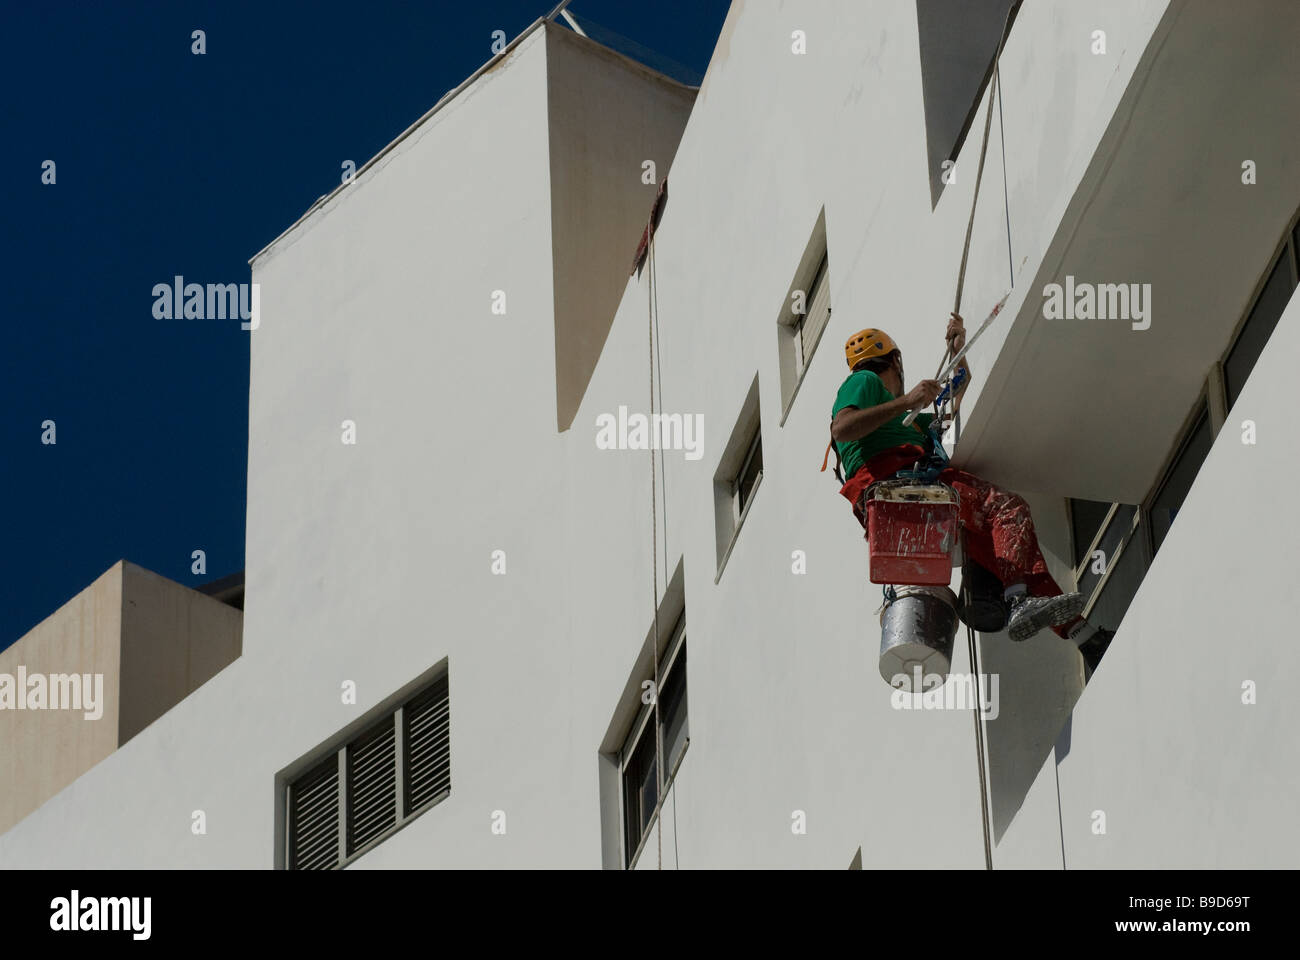 Descente en rappel travailleur peinture mur extérieur d'un bâtiment de style Bauhaus à Rothschild Street Tel Aviv ISRAËL Banque D'Images